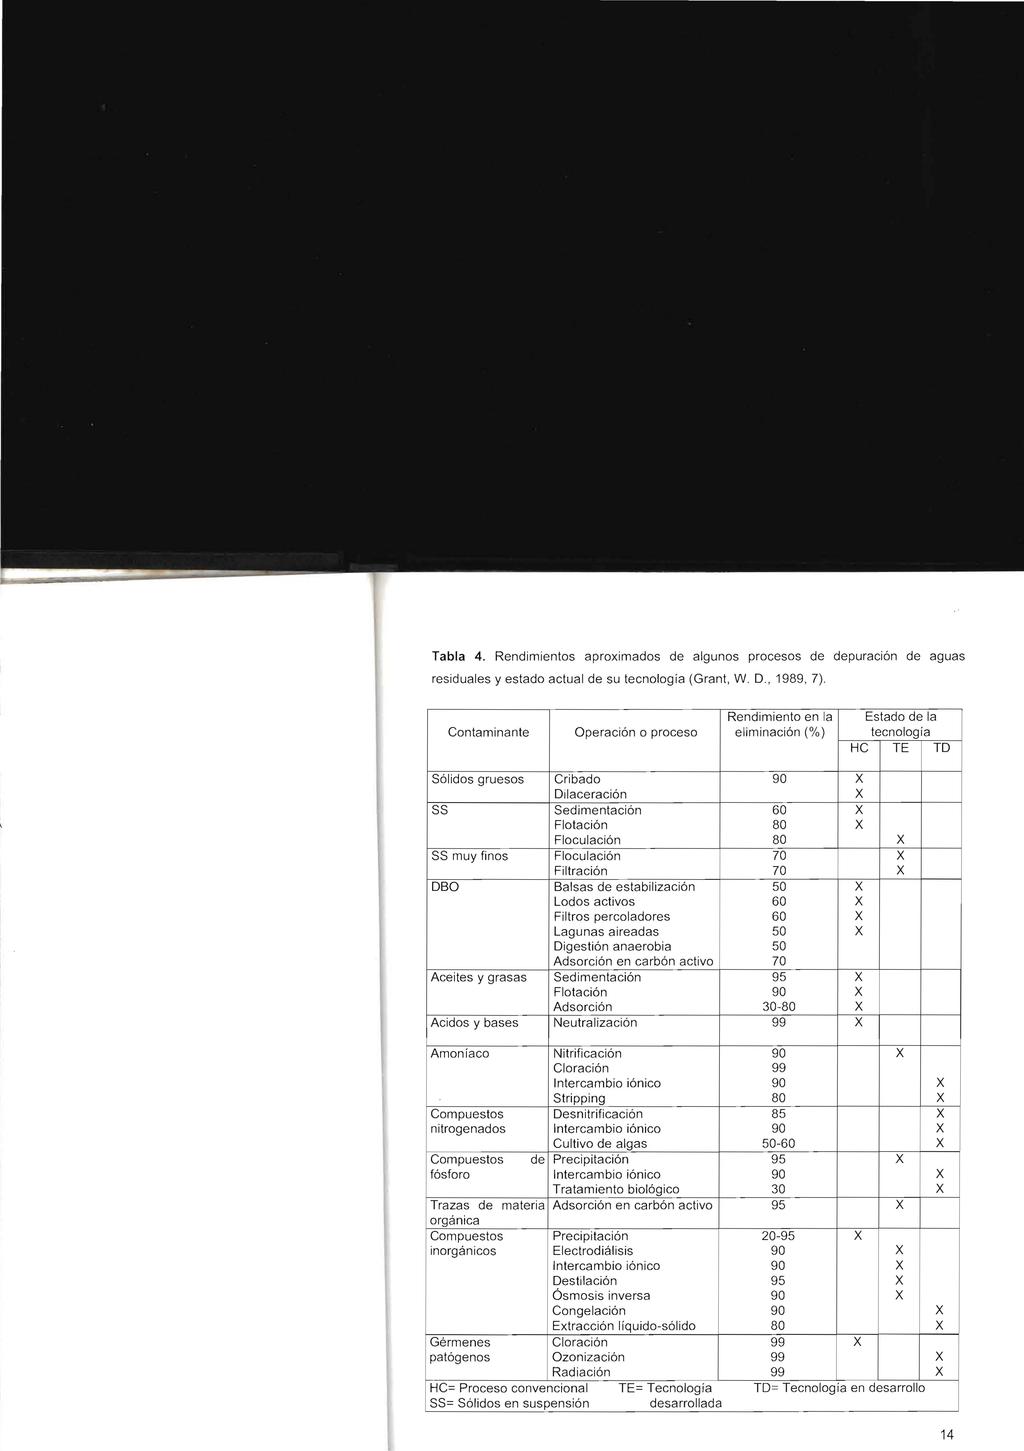 Tabla 4. Rendimientos aproximados de algunos procesos de depuracion de aguas residuales y estado actual de su tecnologia (Grant, W. D., 1989,7).